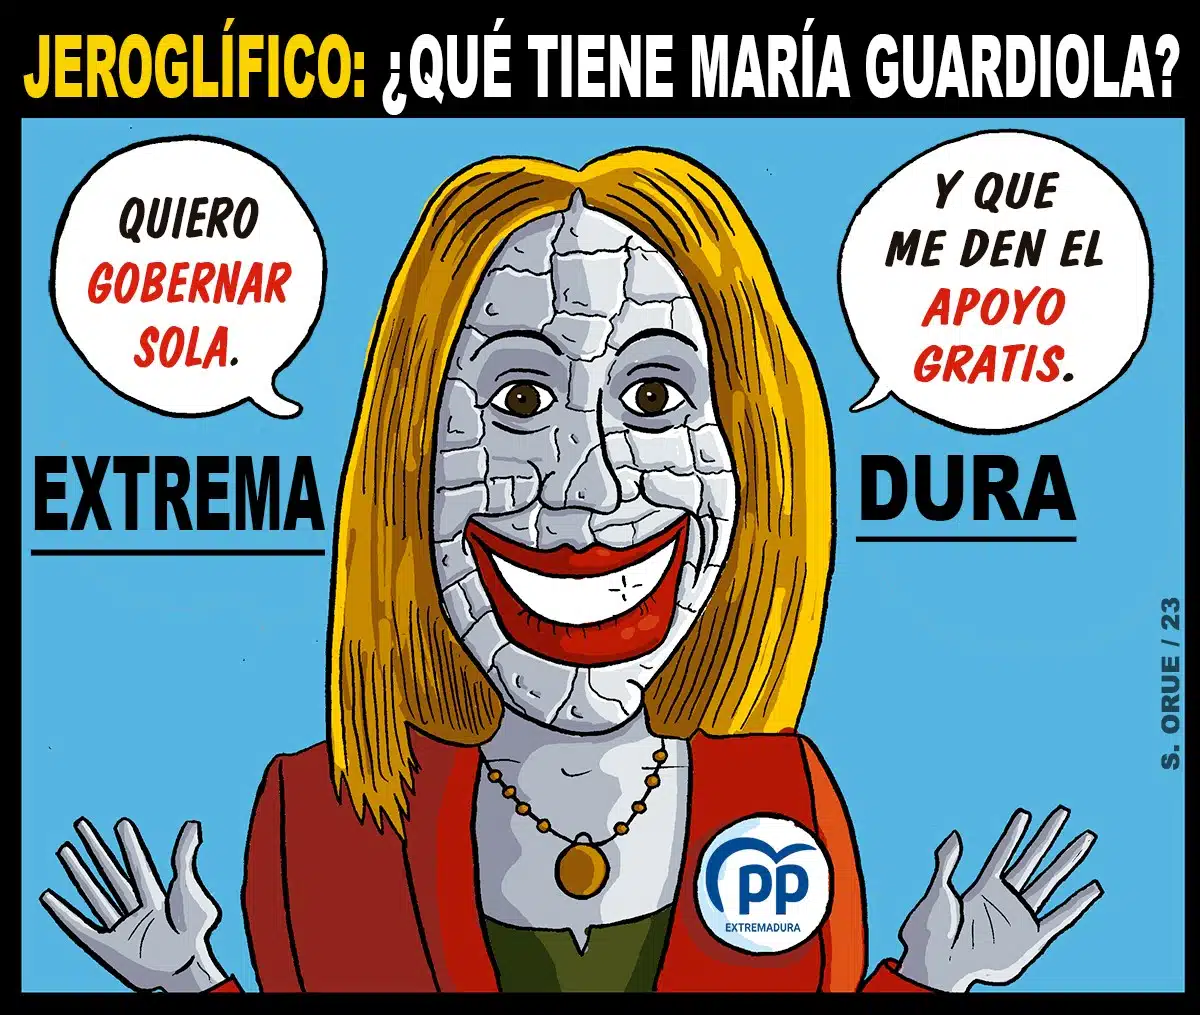 La-candidata-del-PP-en-Extremadura-actua-como-si-hubiese-ganado-unas-elecciones-que-perdio.jpg.webp